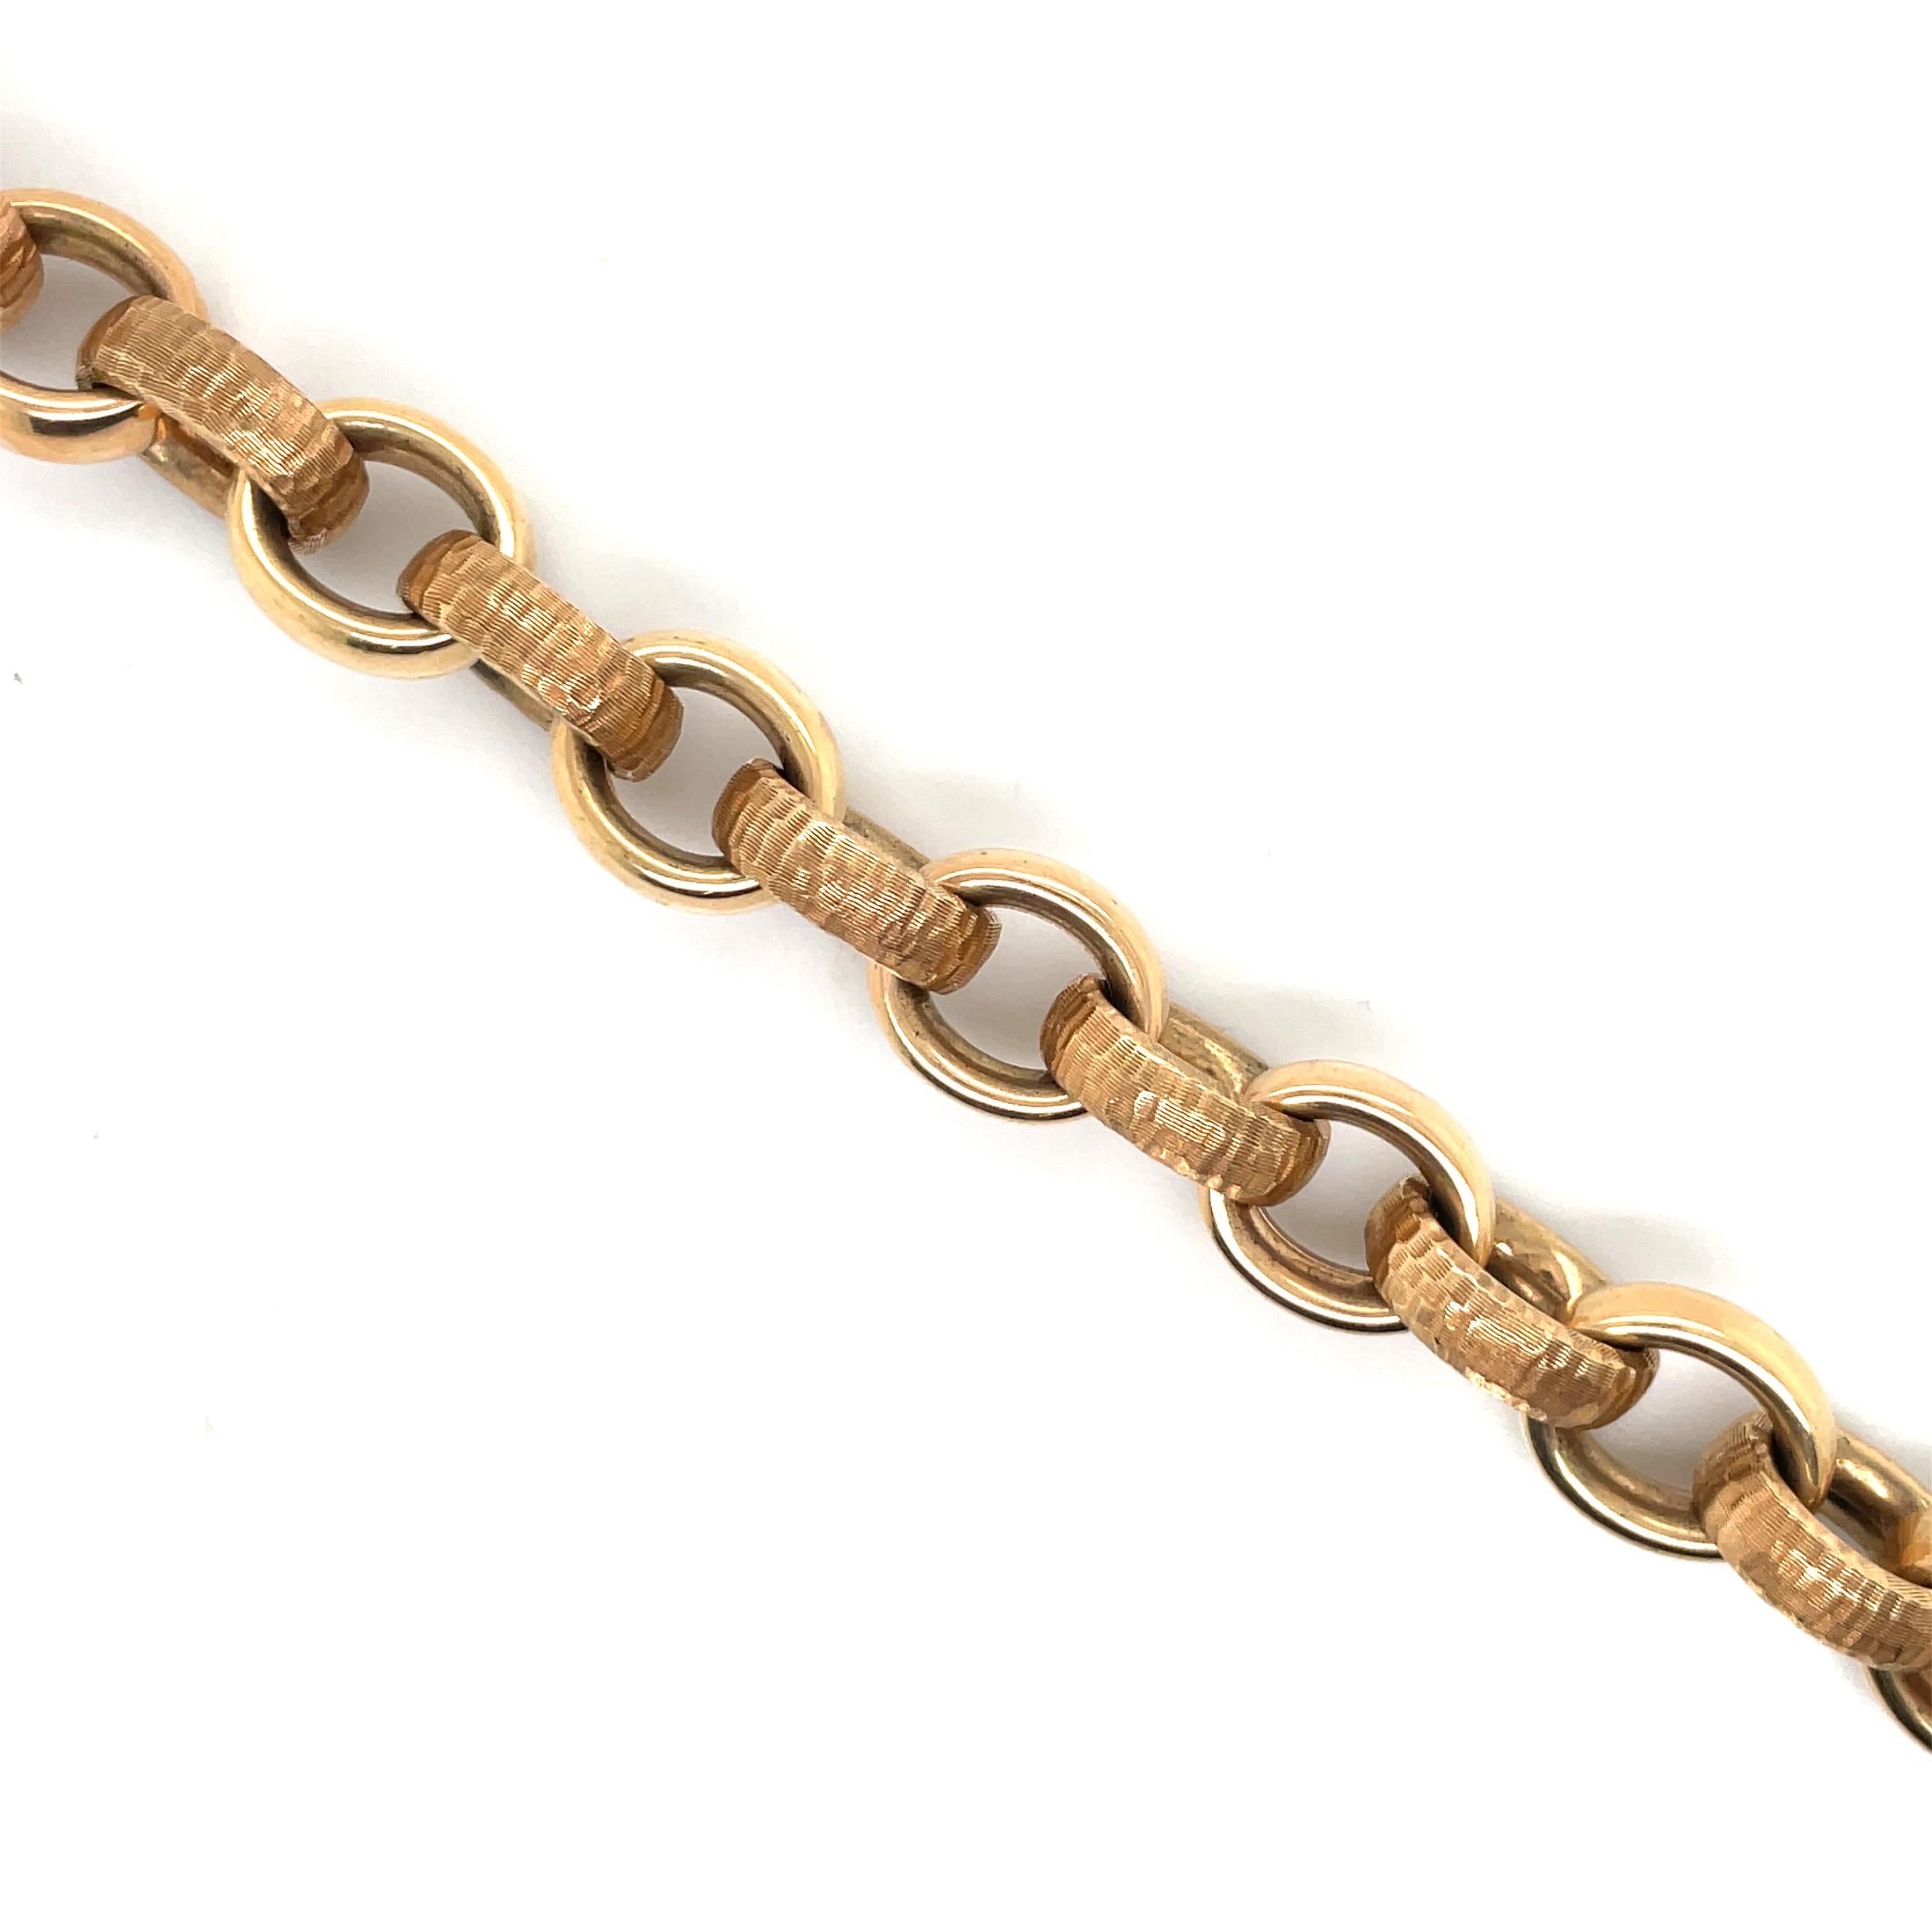 Dieses in Italien gefertigte Armband aus 14 Karat Roségold besteht aus abwechselnd hochglanzpolierten und gehämmerten Gliedern mit einem Gewicht von 36,6 Gramm.
